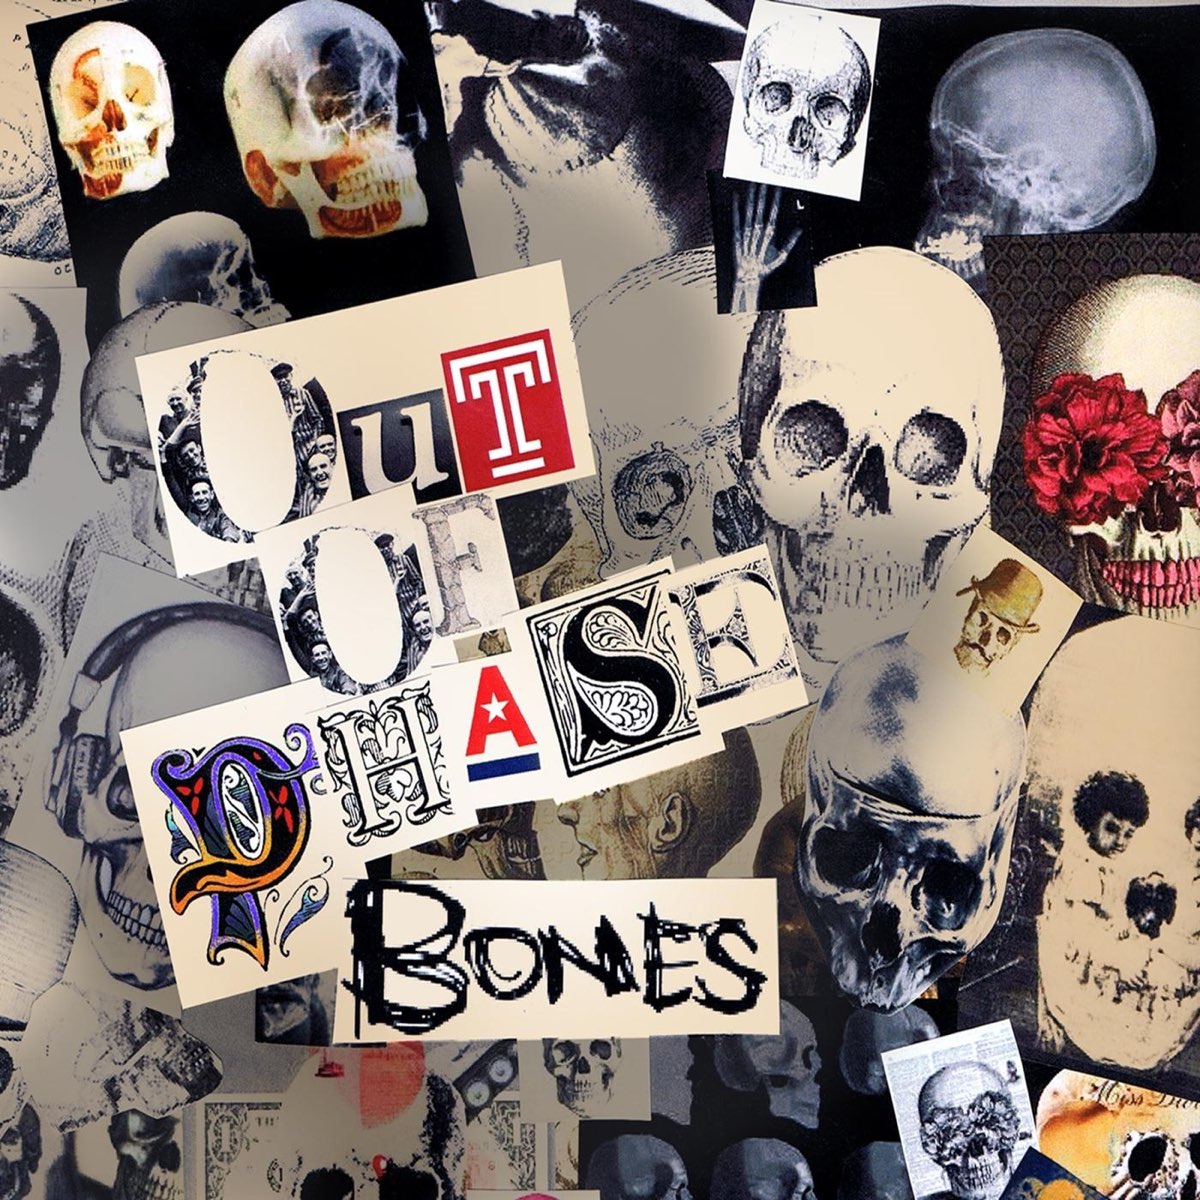 Bones take. Bones альбомы. Обложка в стиле Bones. Bones обложки альбомов. Обложки песен Bones.